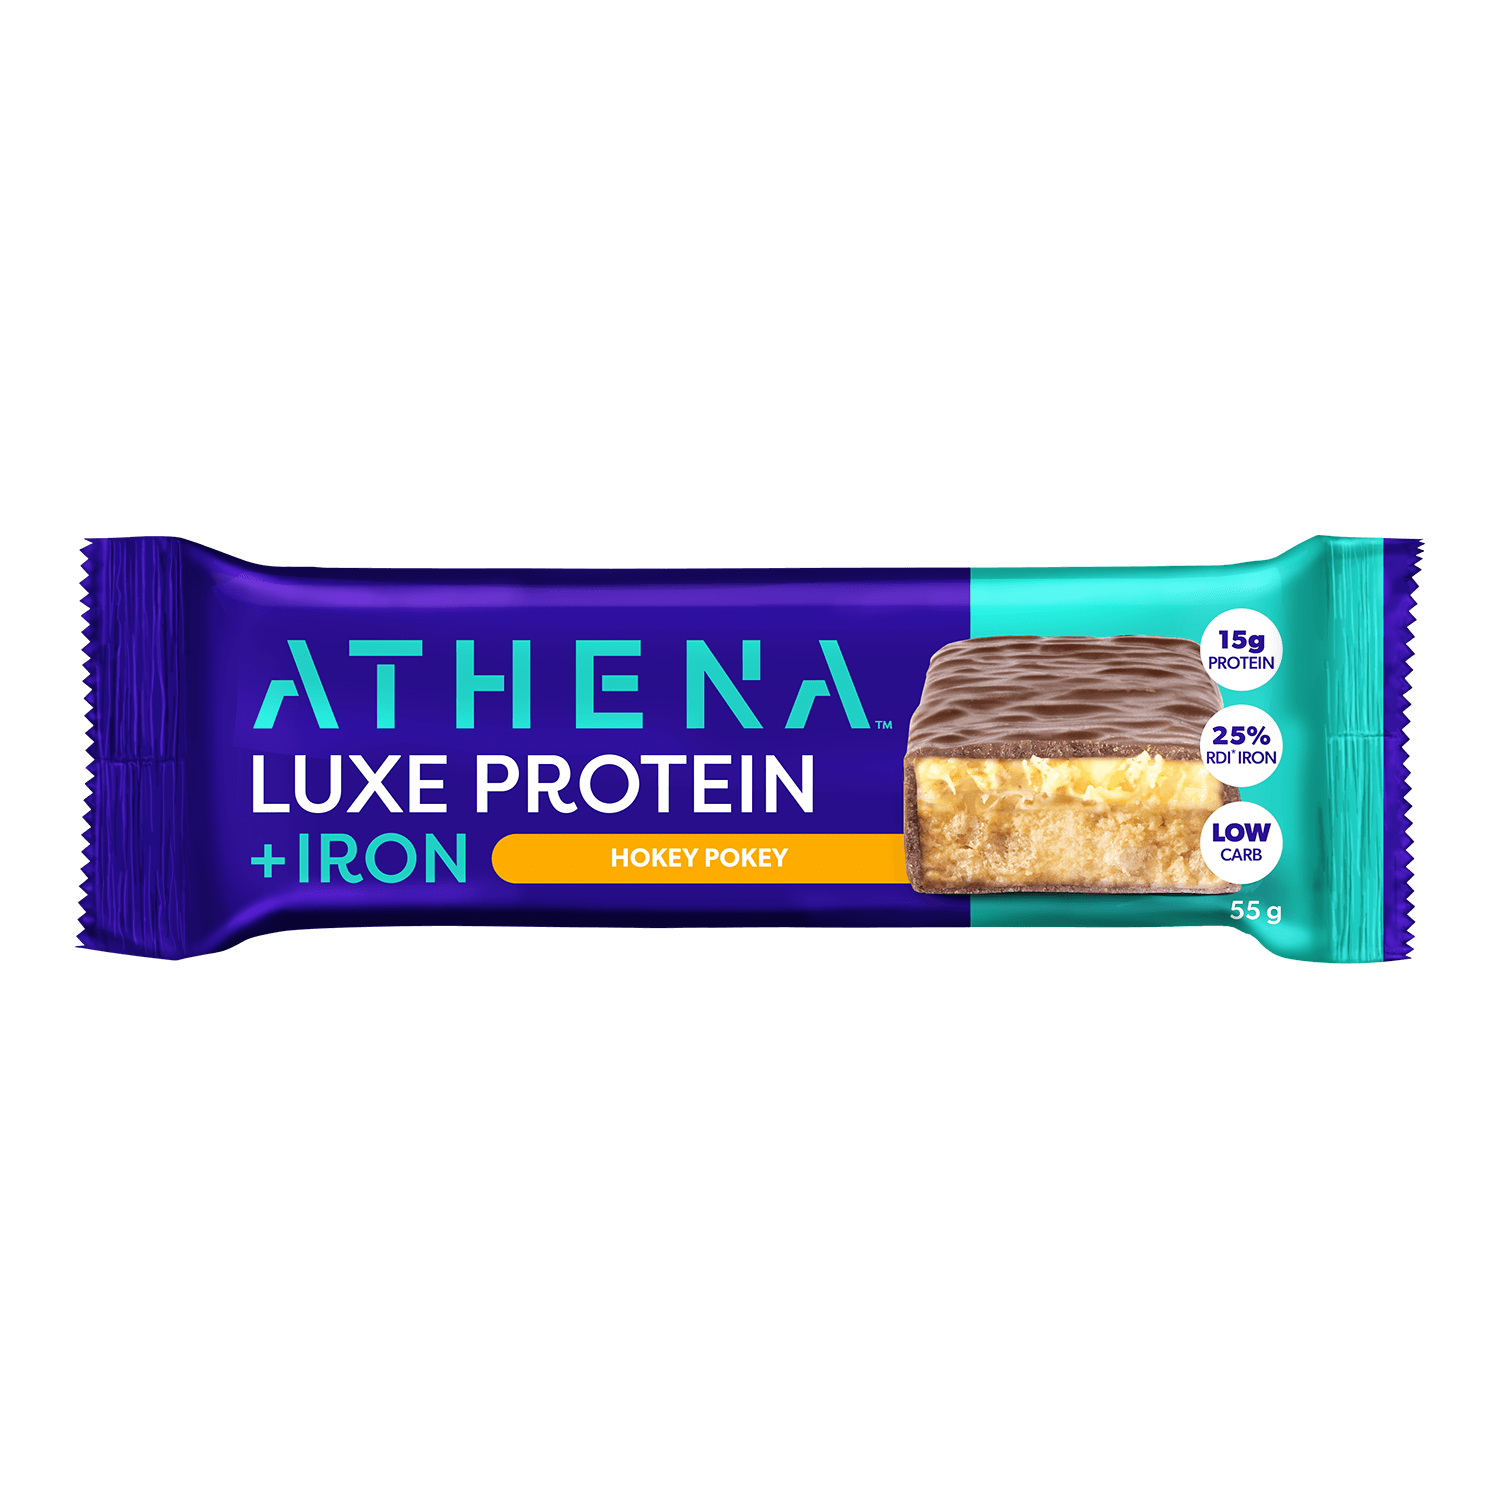 Luxe Protein + Iron